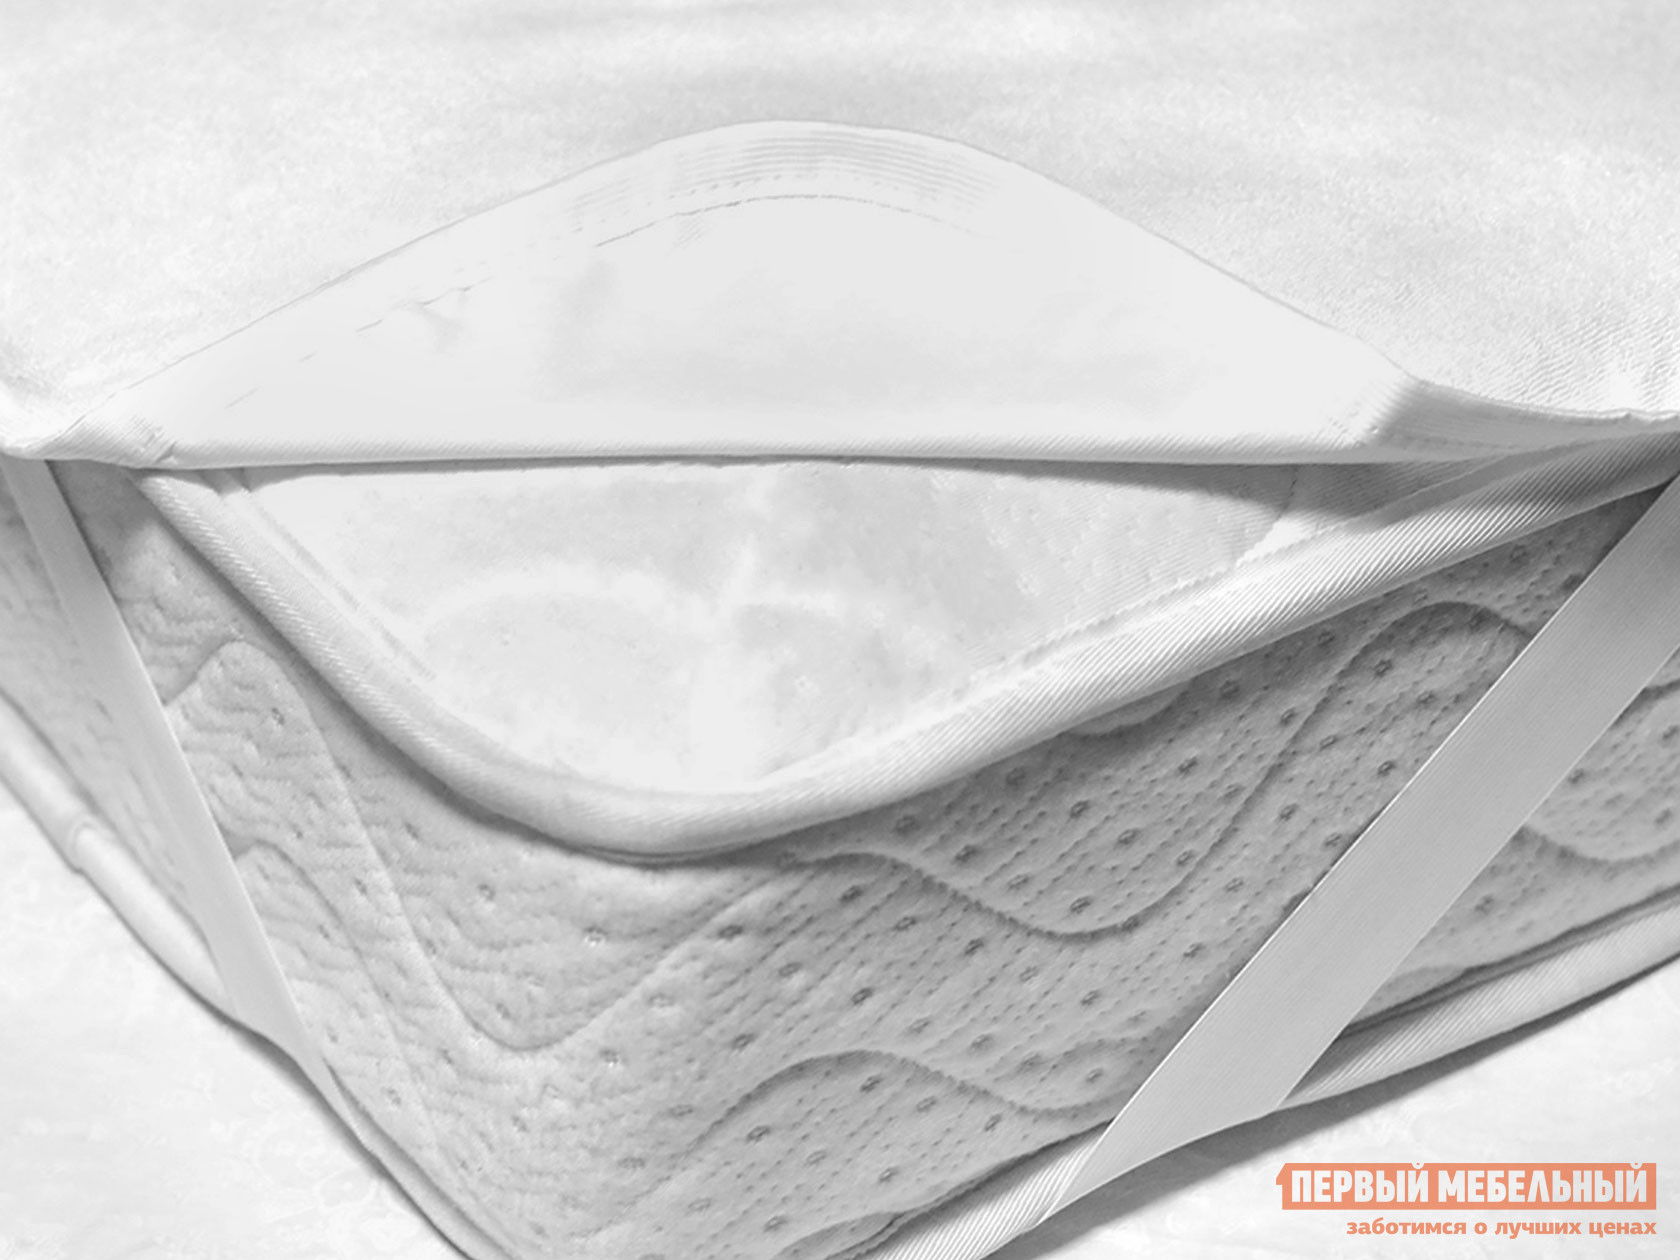 Чехол для матраса  Фулл протекшн на резинке Белый махровый, 1200 Х 2000 мм от Первый Мебельный